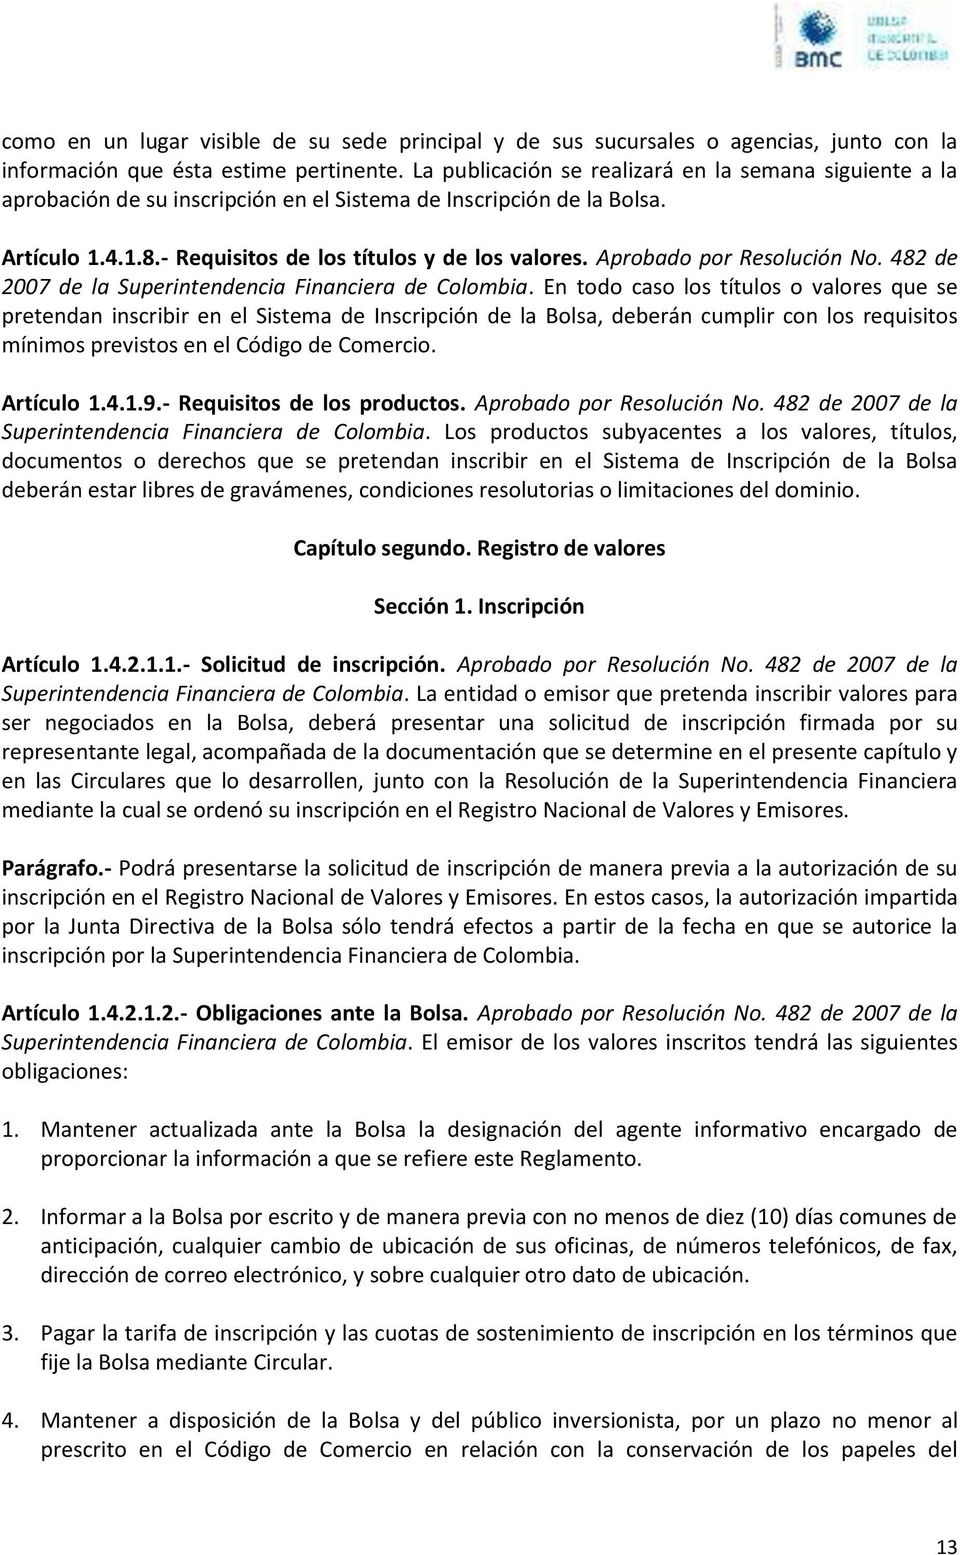 Aprobado por Resolución No. 482 de 2007 de la Superintendencia Financiera de Colombia.